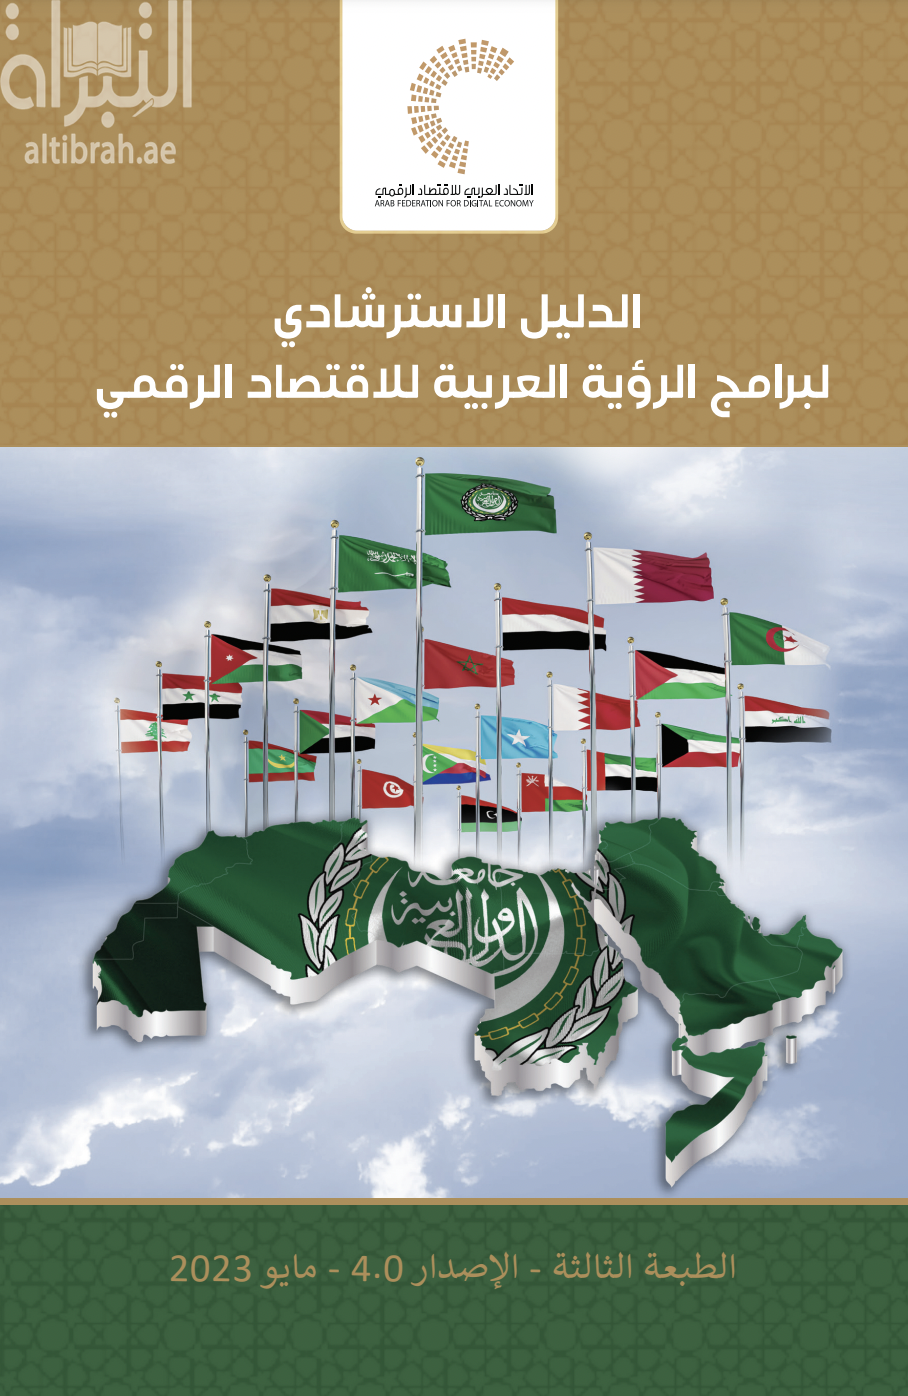 كتاب الدليل الإسترشادي لبرامج الرؤية العربية للإقتصاد الرقمي